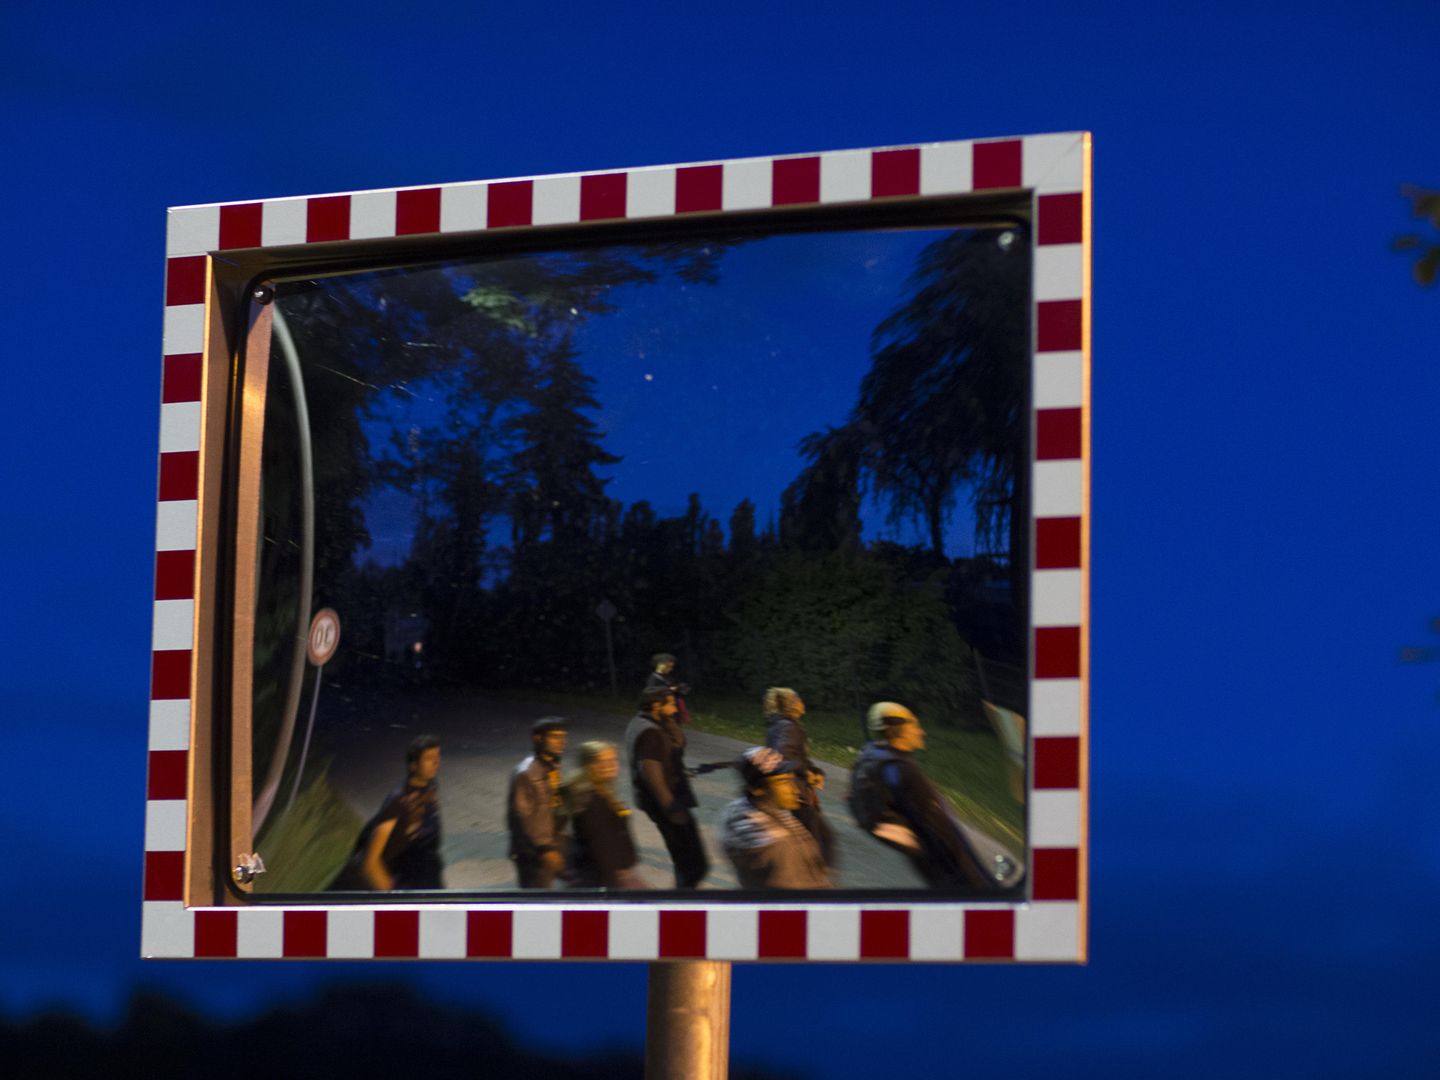 Refugiados reflejados en un espejo durante una protesta en el pueblo alemán de Petzow (Reuters).